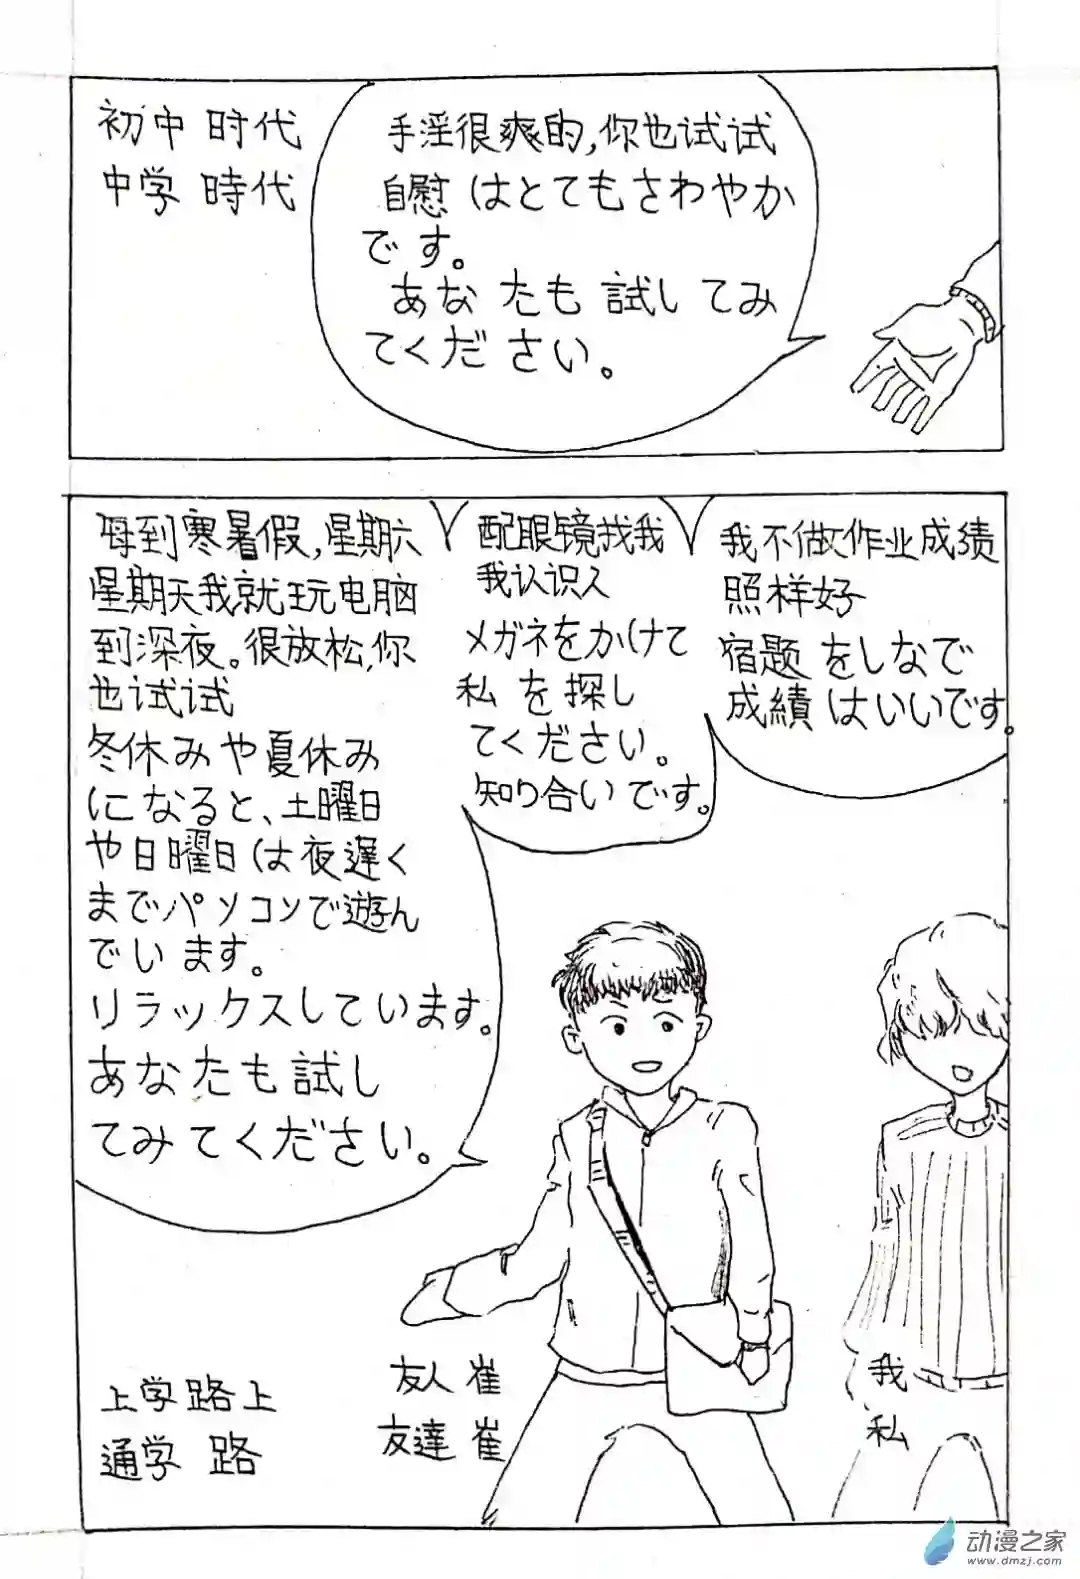 日刊漫画06 少年赏妹篇三